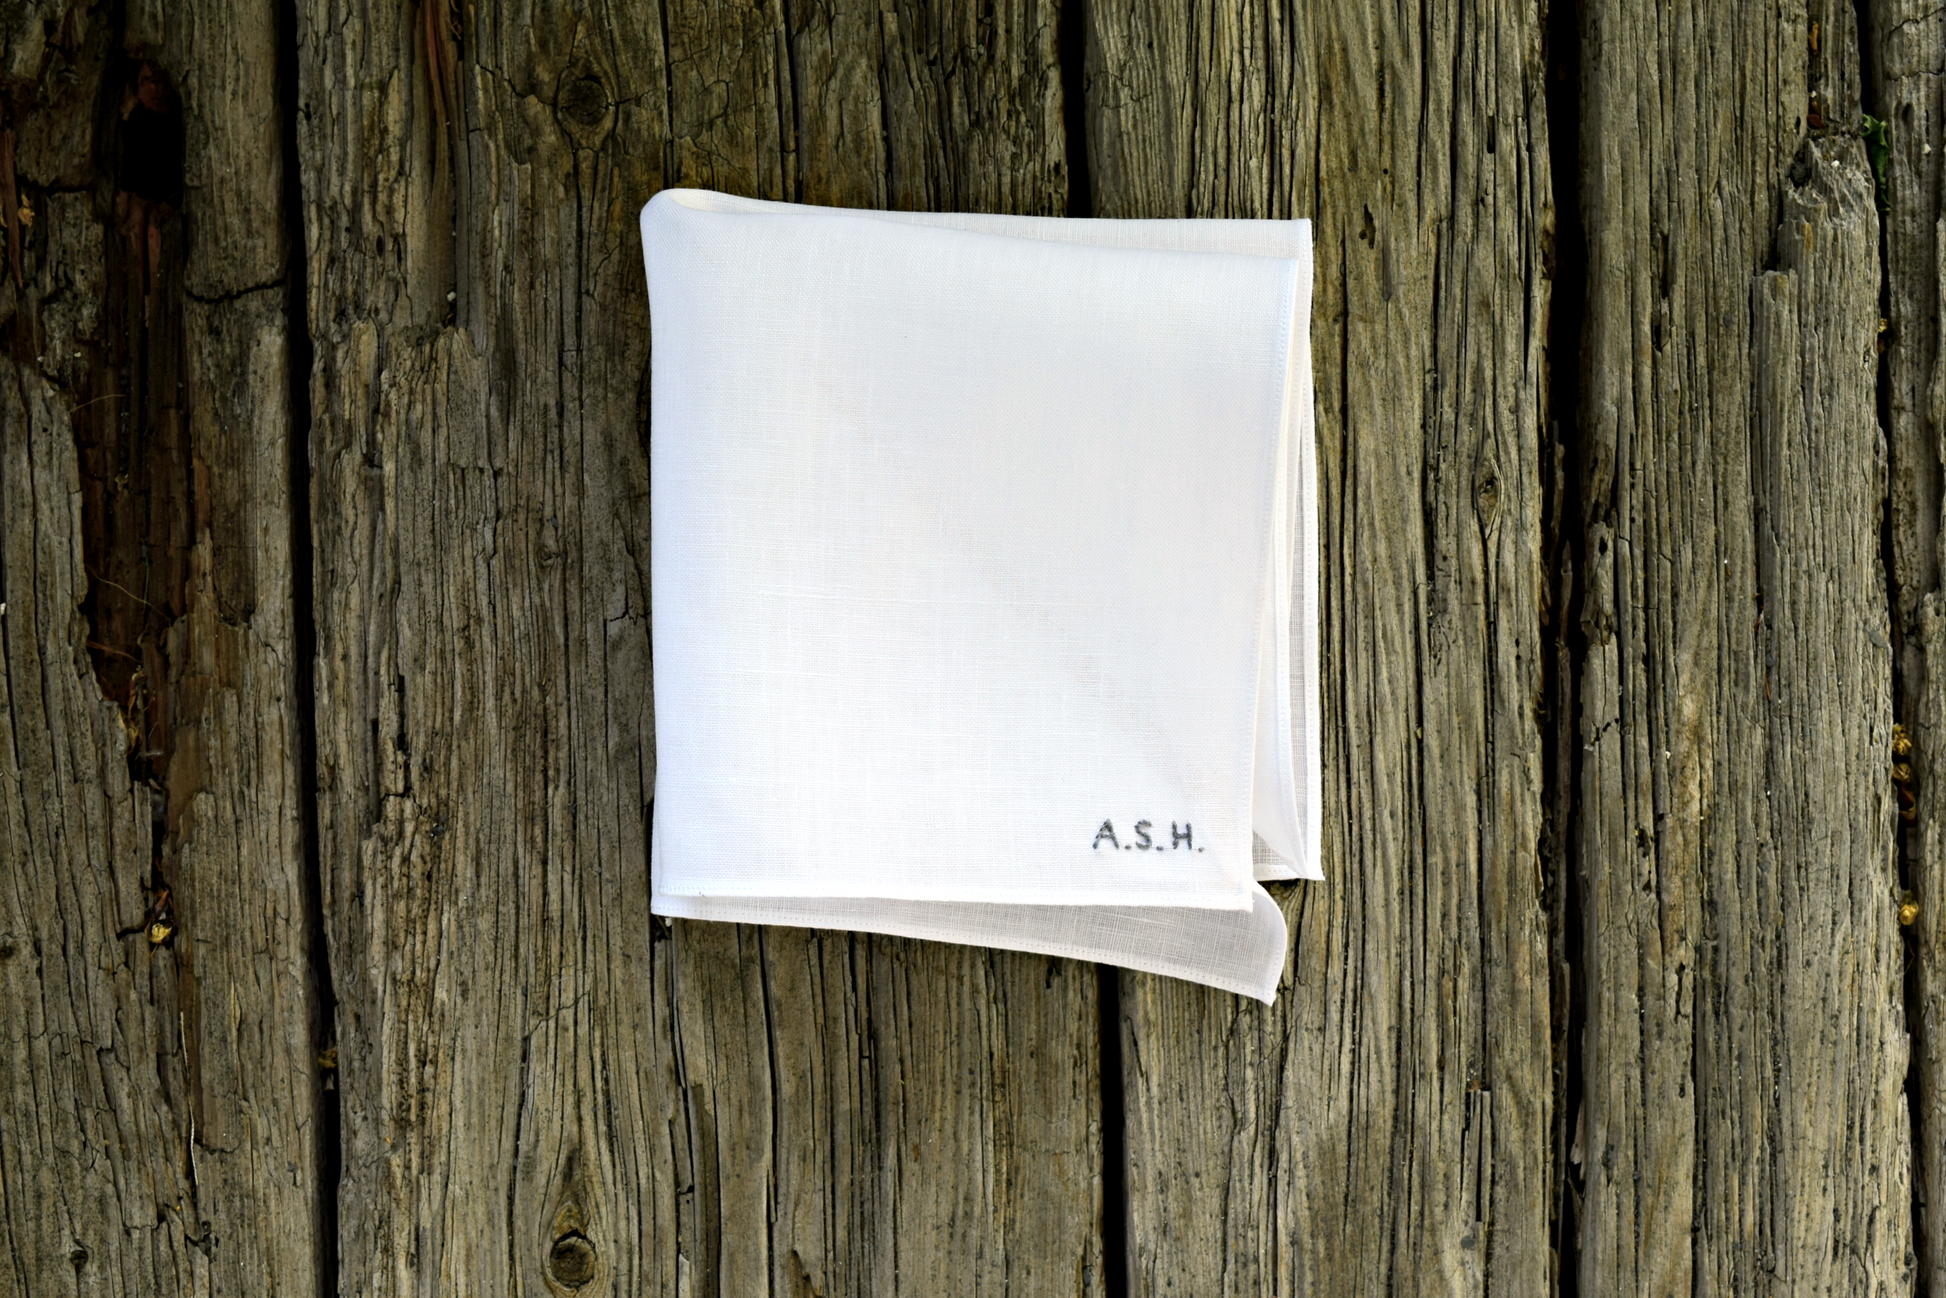 White Irish linen handkerchief hand embroidered with tiny monogram